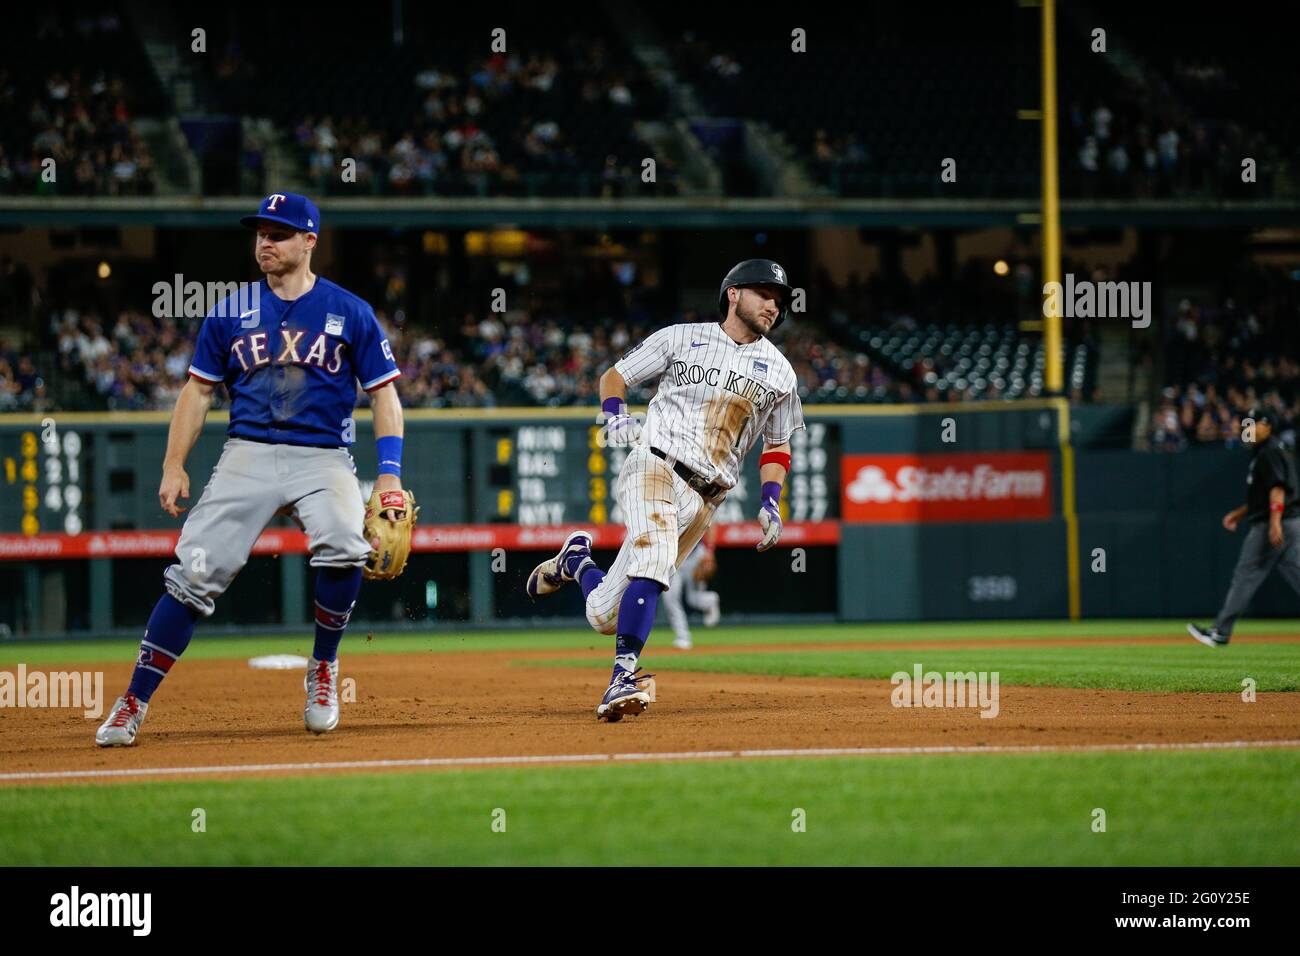 Der Shortstop der Colorado Rockies Garrett Hampson (1) führt die Basen während eines MLB-Spiels in der regulären Saison gegen die Texas Rangers, Mittwoch, den 2. Juni 2021, Stockfoto